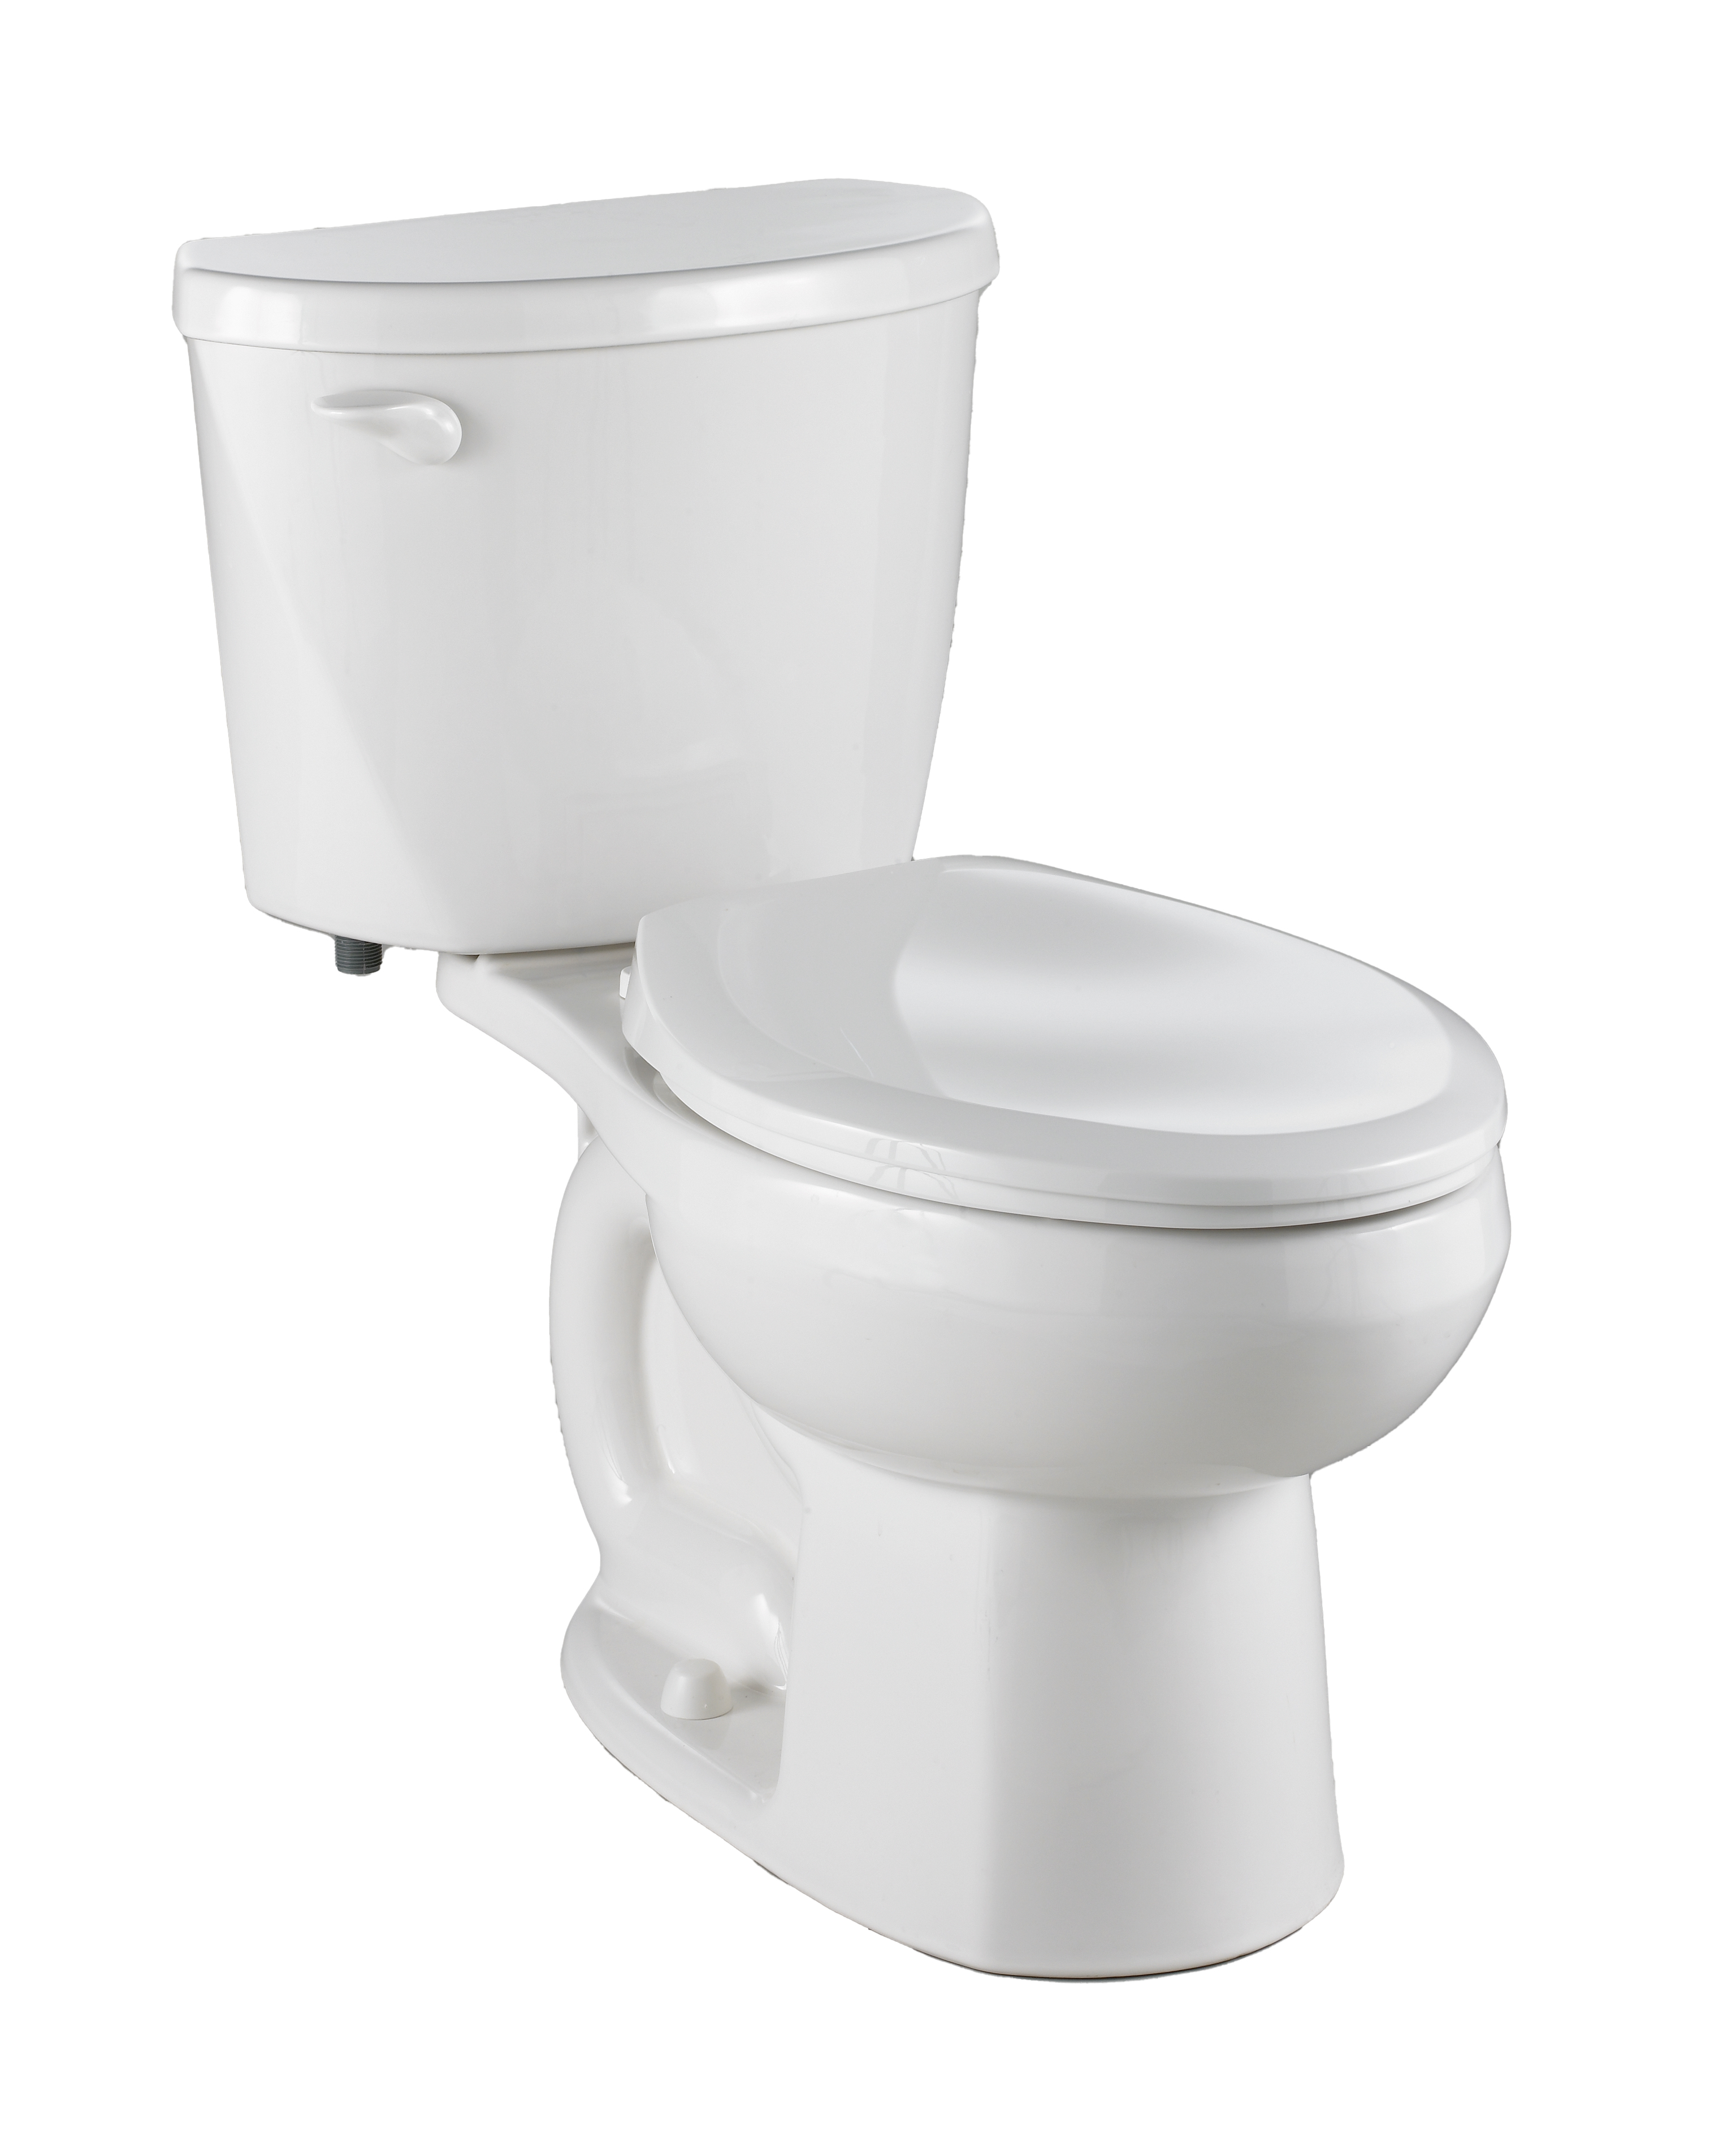 Toilette Evolution 2, 2 pièces, 1,6 gpc/6,0 lpc, à cuvette allongée à hauteur régulière, sans siège